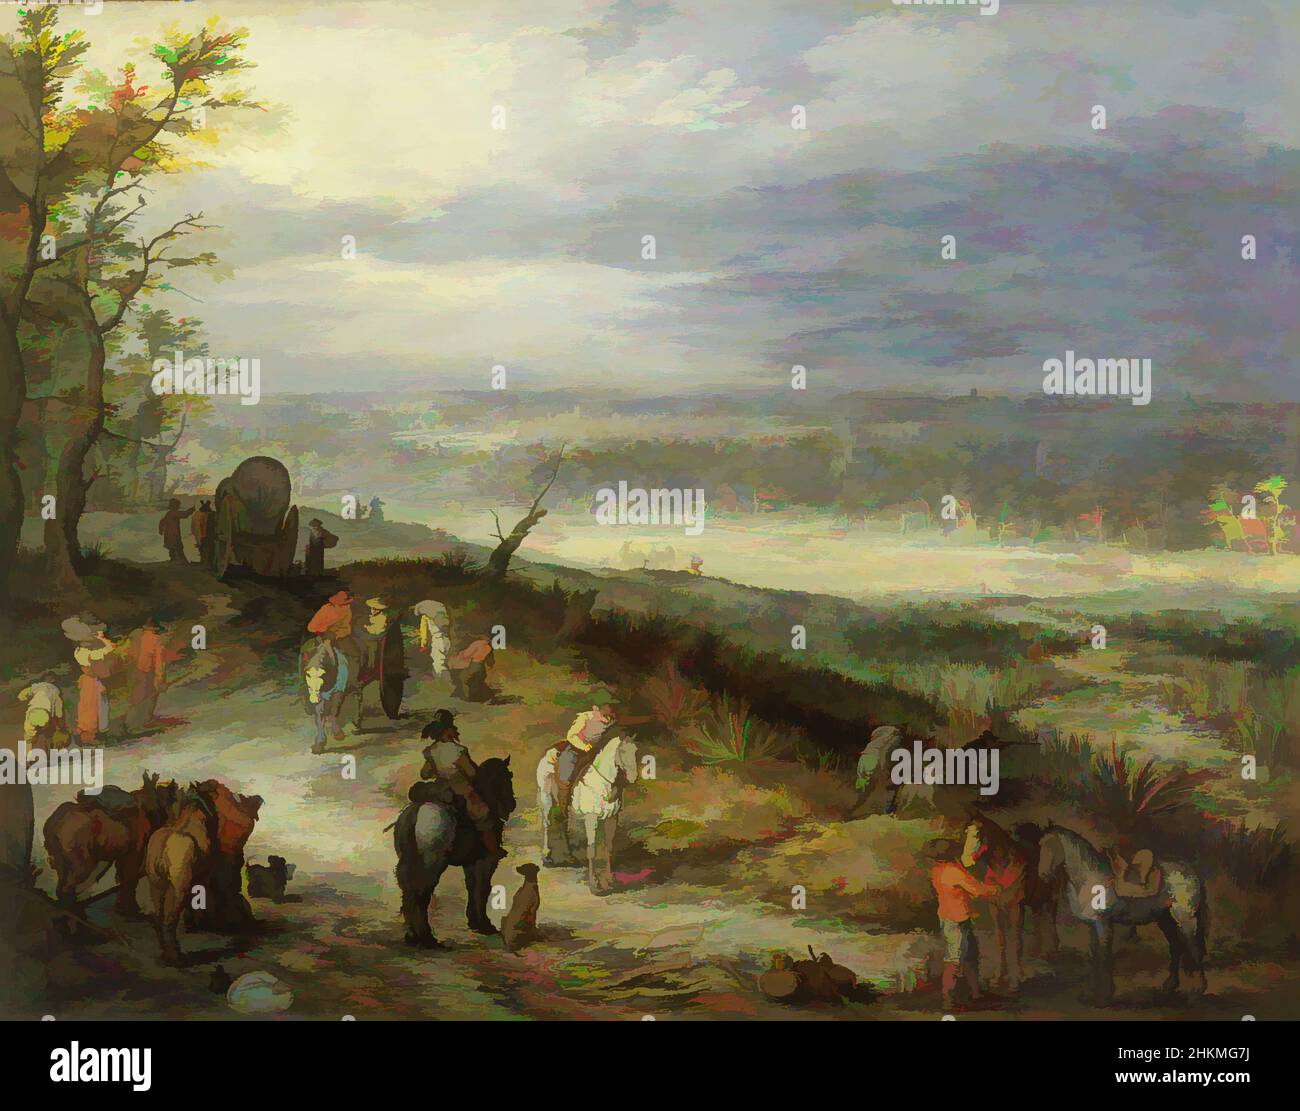 Art inspiré par un paysage étendu avec des voyageurs sur une route de campagne, Jan Brueghel l'ancien, flamand, 1568-1625, c.1608-10, huile sur cuivre, Fabriqué à Anvers, province d'Anvers, Belgique, Europe, peintures, 13 1/4 x 18 1/4 po (33,6 x 46,4 cm, œuvres classiques modernisées par Artotop avec une touche de modernité. Formes, couleur et valeur, impact visuel accrocheur sur l'art émotions par la liberté d'œuvres d'art d'une manière contemporaine. Un message intemporel qui cherche une nouvelle direction créative. Artistes qui se tournent vers le support numérique et créent le NFT Artotop Banque D'Images